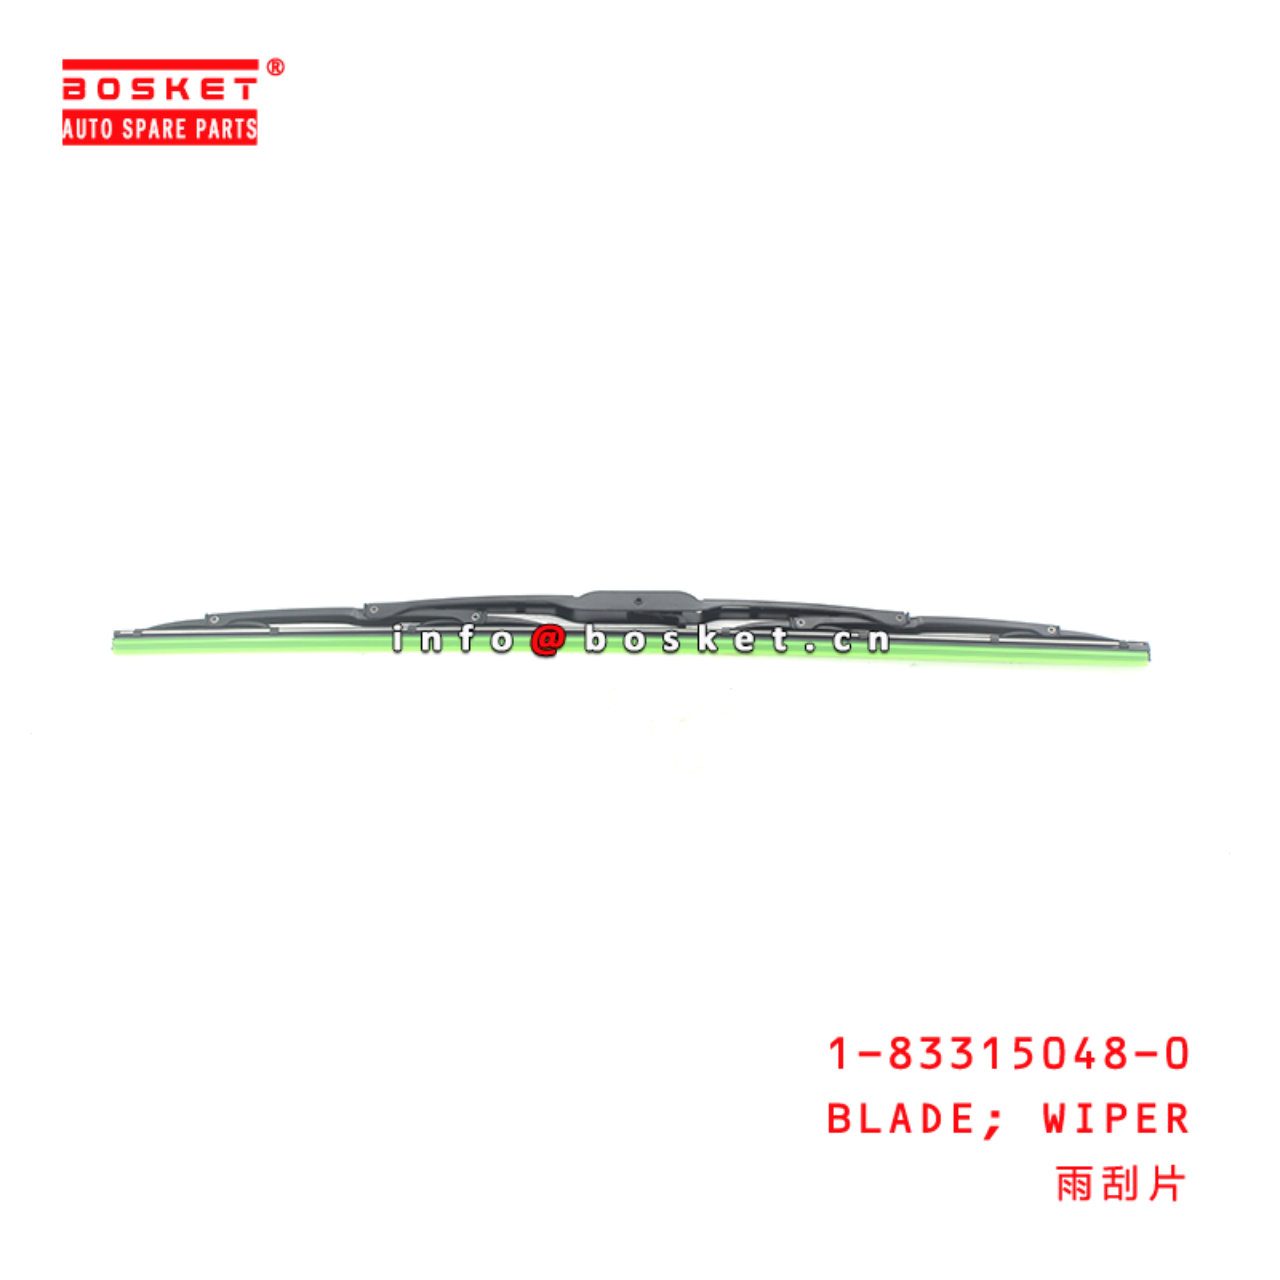 1-83315048-0 Wiper Blade Suitable for ISUZU ESR FRR FSR 1833150480